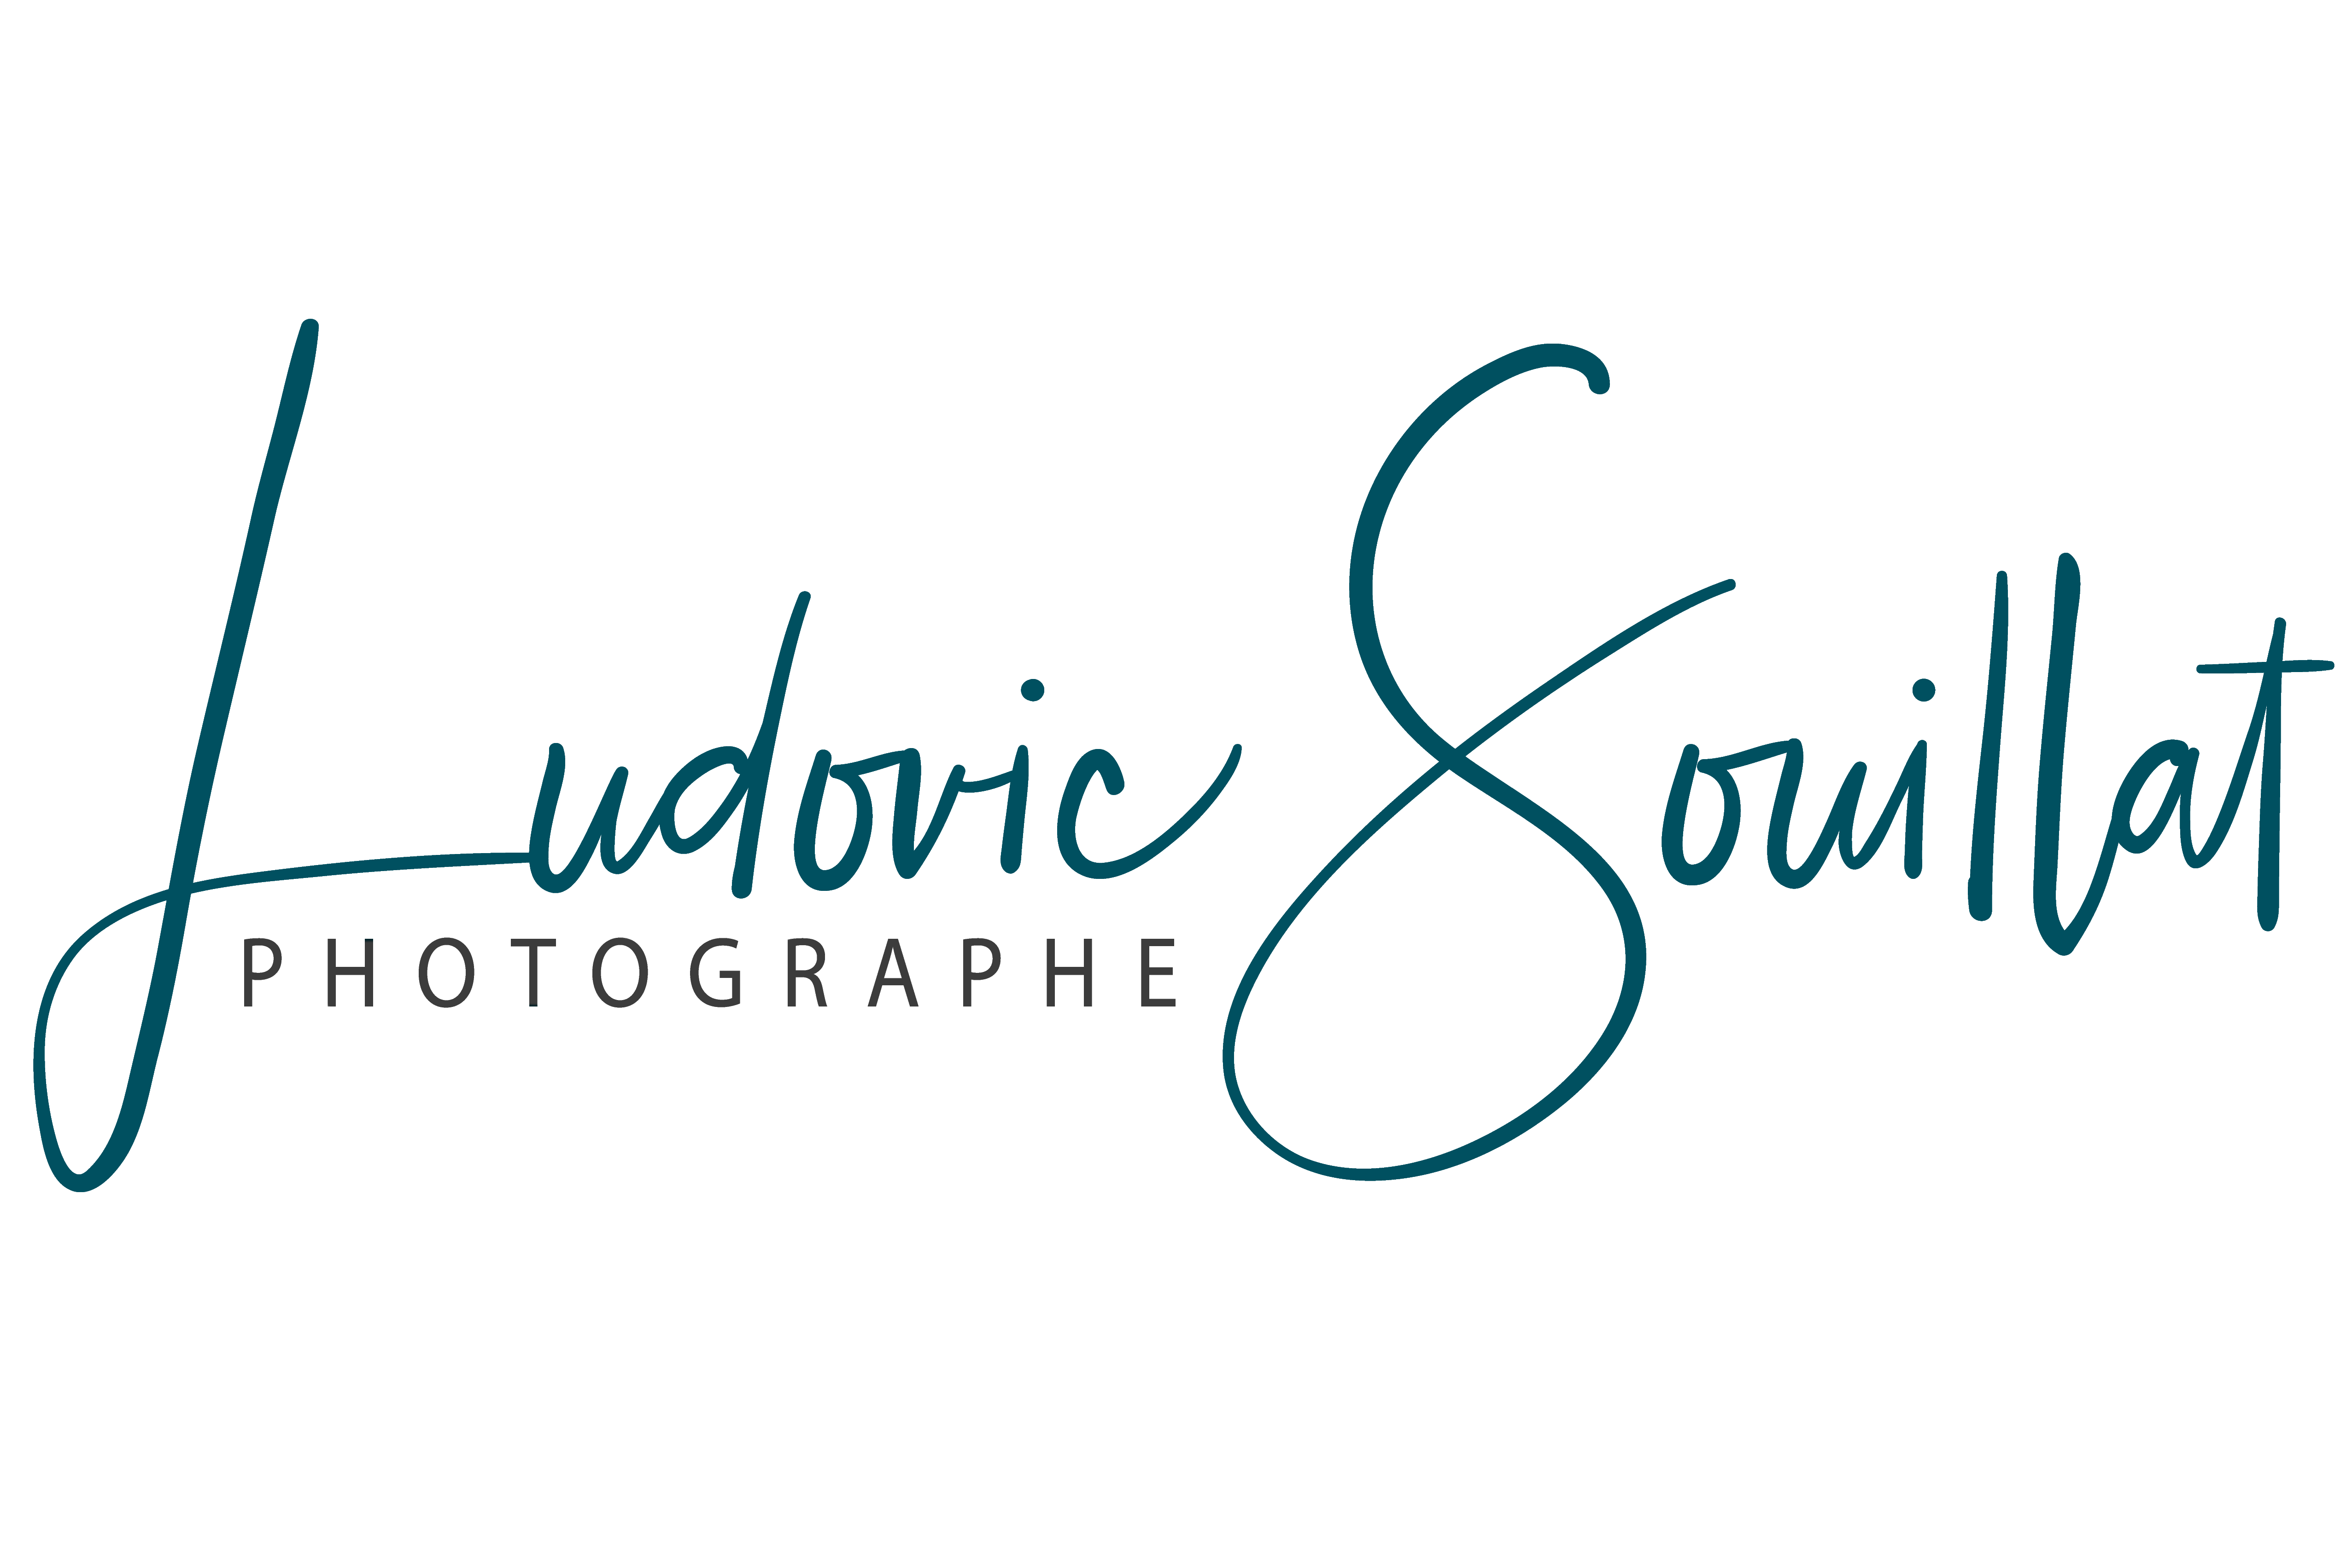 Ludovic-Souillat-color2